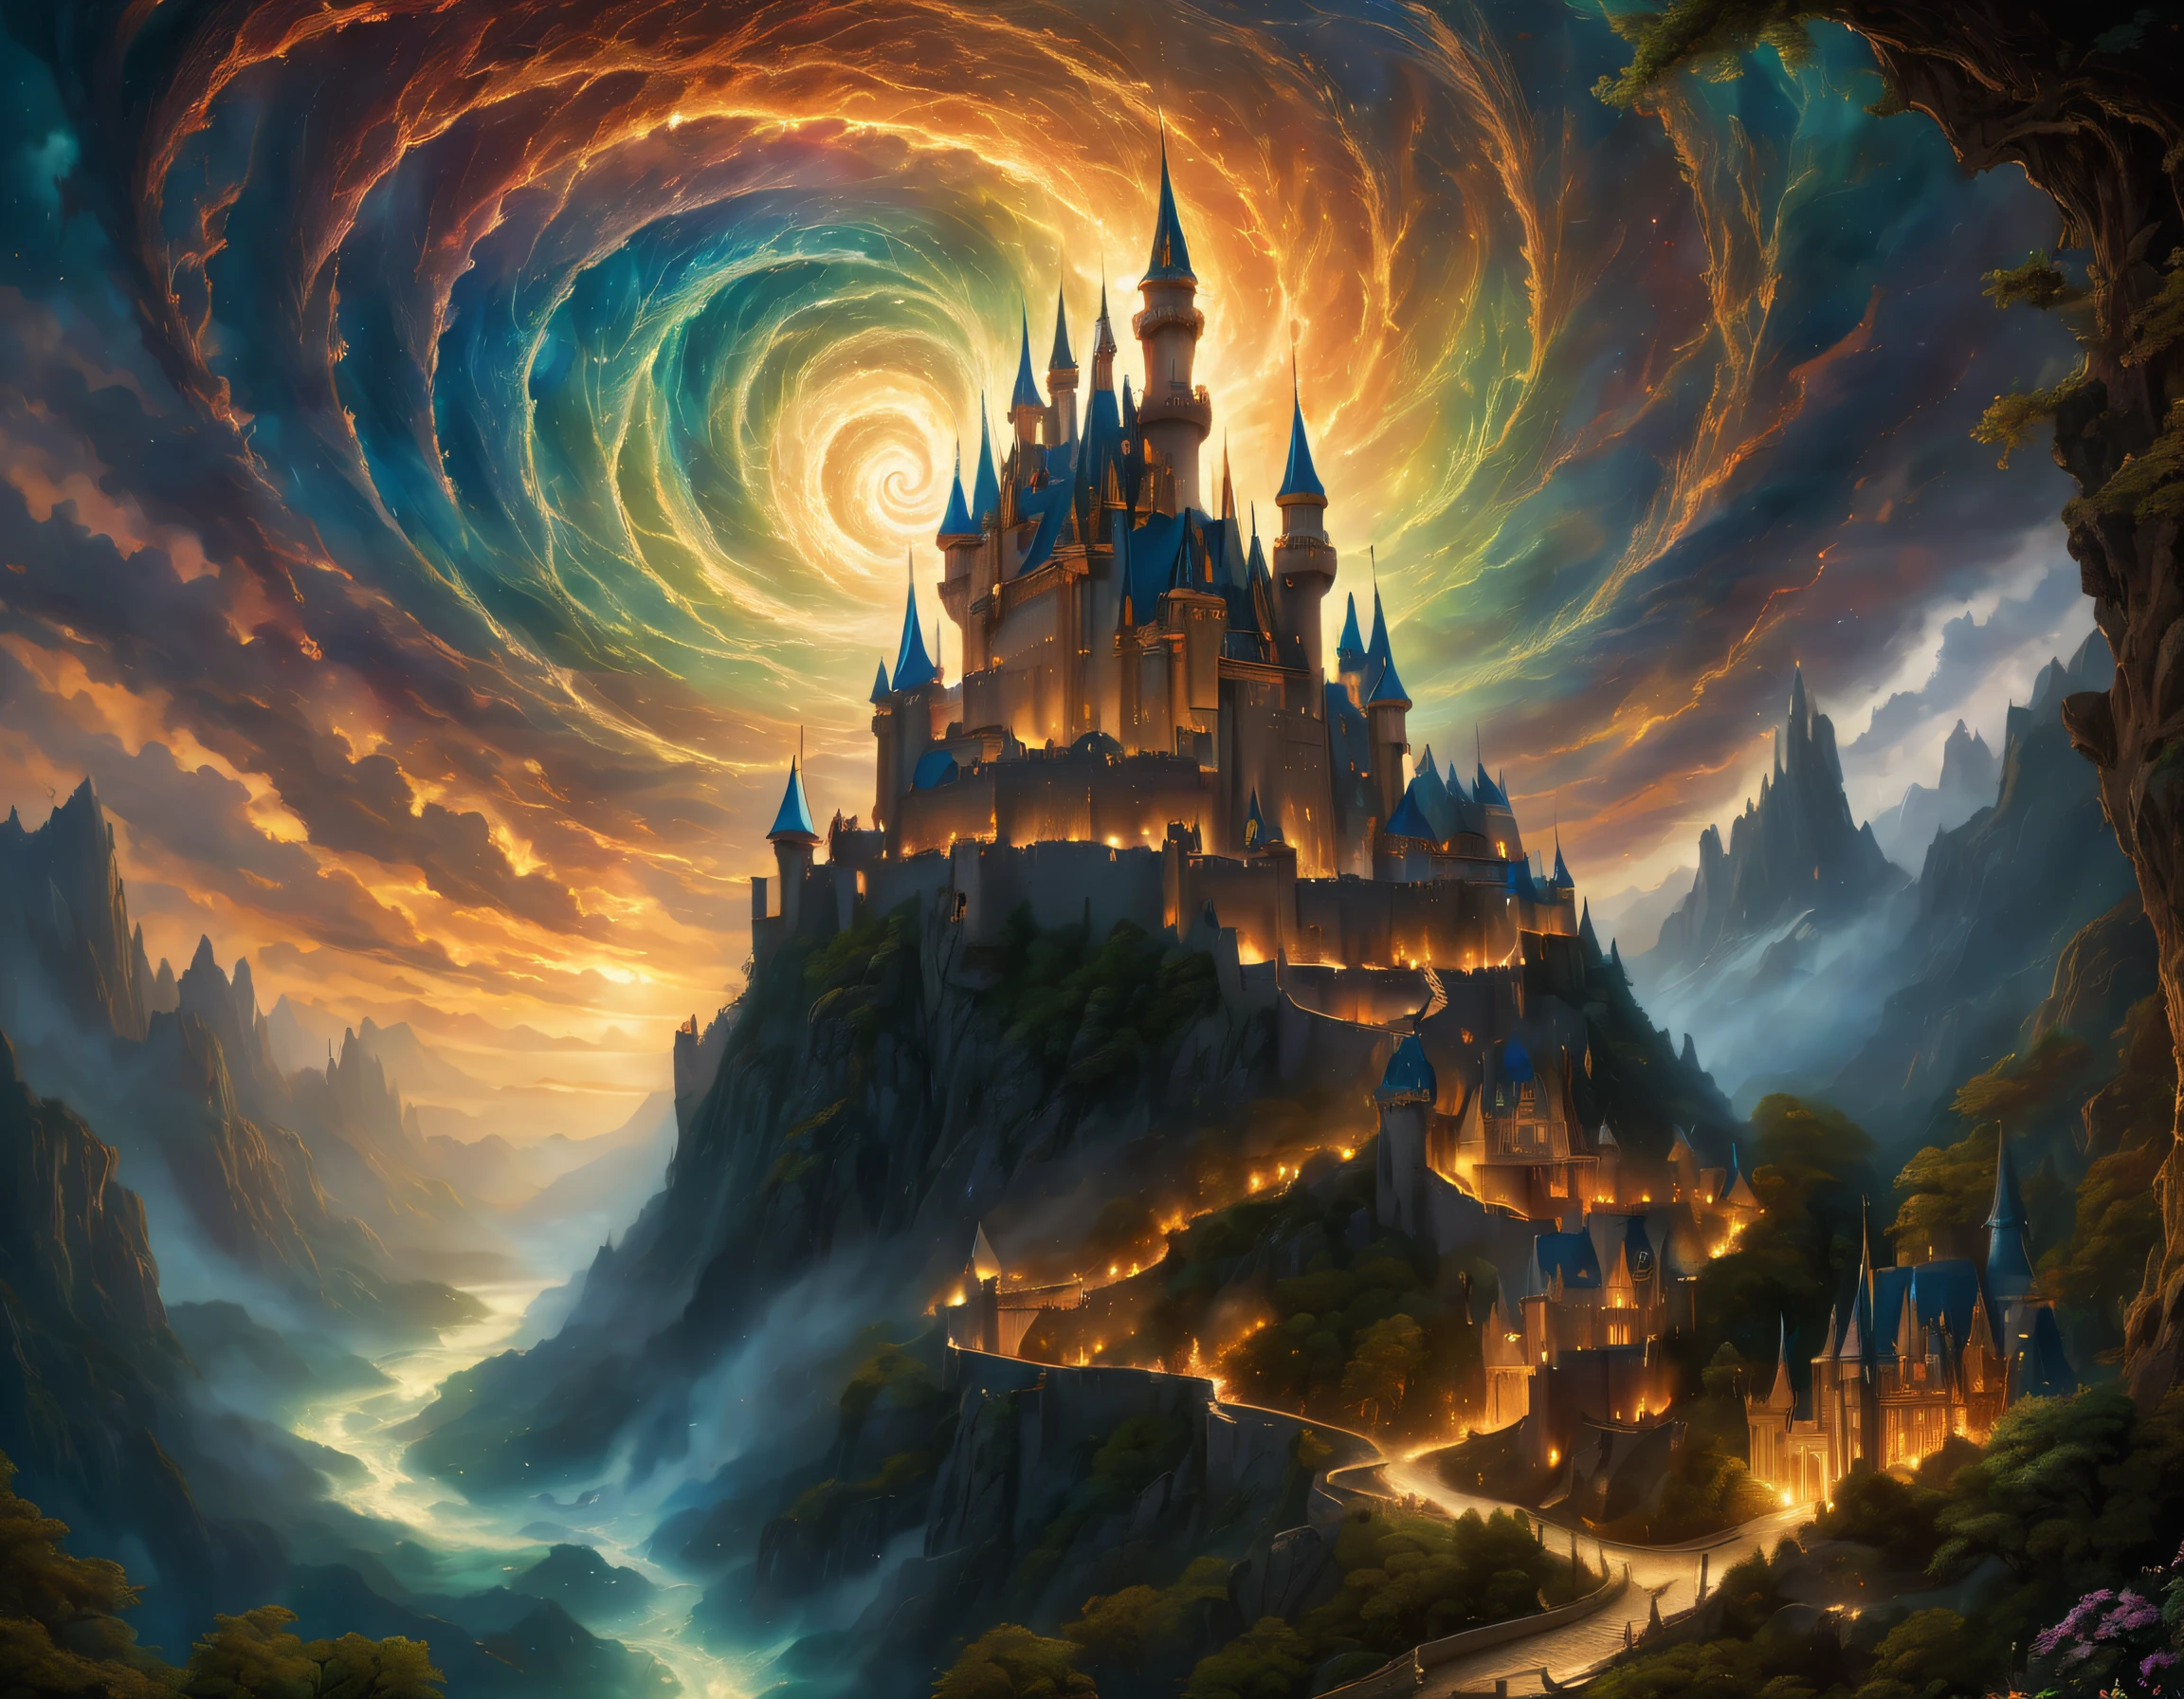 (((메인 테마 일러스트가 담긴 엽서:1.5))), (((소용돌이 치는 소용돌이 주변의 많은 엽서:1.5))). (((A mythical dark fantasy castle with majestic 그리고 powerful intricate color details:1.3))), intricately 그리고 detailedly decorated, 놀라운 대조를 이루는 신성한 마법, Stunning very fine details that are fantastic 그리고 enchanting, 놀랍도록 아주 미세한 디테일、Cybernetic wings 그리고 intricate fairy-like details, A great contrast with the dark 그리고 eerie atmosphere of the castle, 고품질 브러시 스트로크로 사실적인 느낌 제공. 극적인 각도에서 본, (((4K pixel ultra-detailed 그리고 ultra-realistic masterpiece:1.3))), Highly intricate 그리고 fine detail quality, Fantastic 그리고 mysterious atmosphere, Light 그리고 shadow interaction, 뛰어난 디테일을 갖춘 사진 같은 이미지, 놀라울 정도로 섬세한 디테일、생생한 컬러, 매혹적인 모습을 만들어내는 기능, 다른 세상의 아름다움, gr그리고 그리고 majestic々그리고, Expertly crafted shadow 그리고 highlight details,